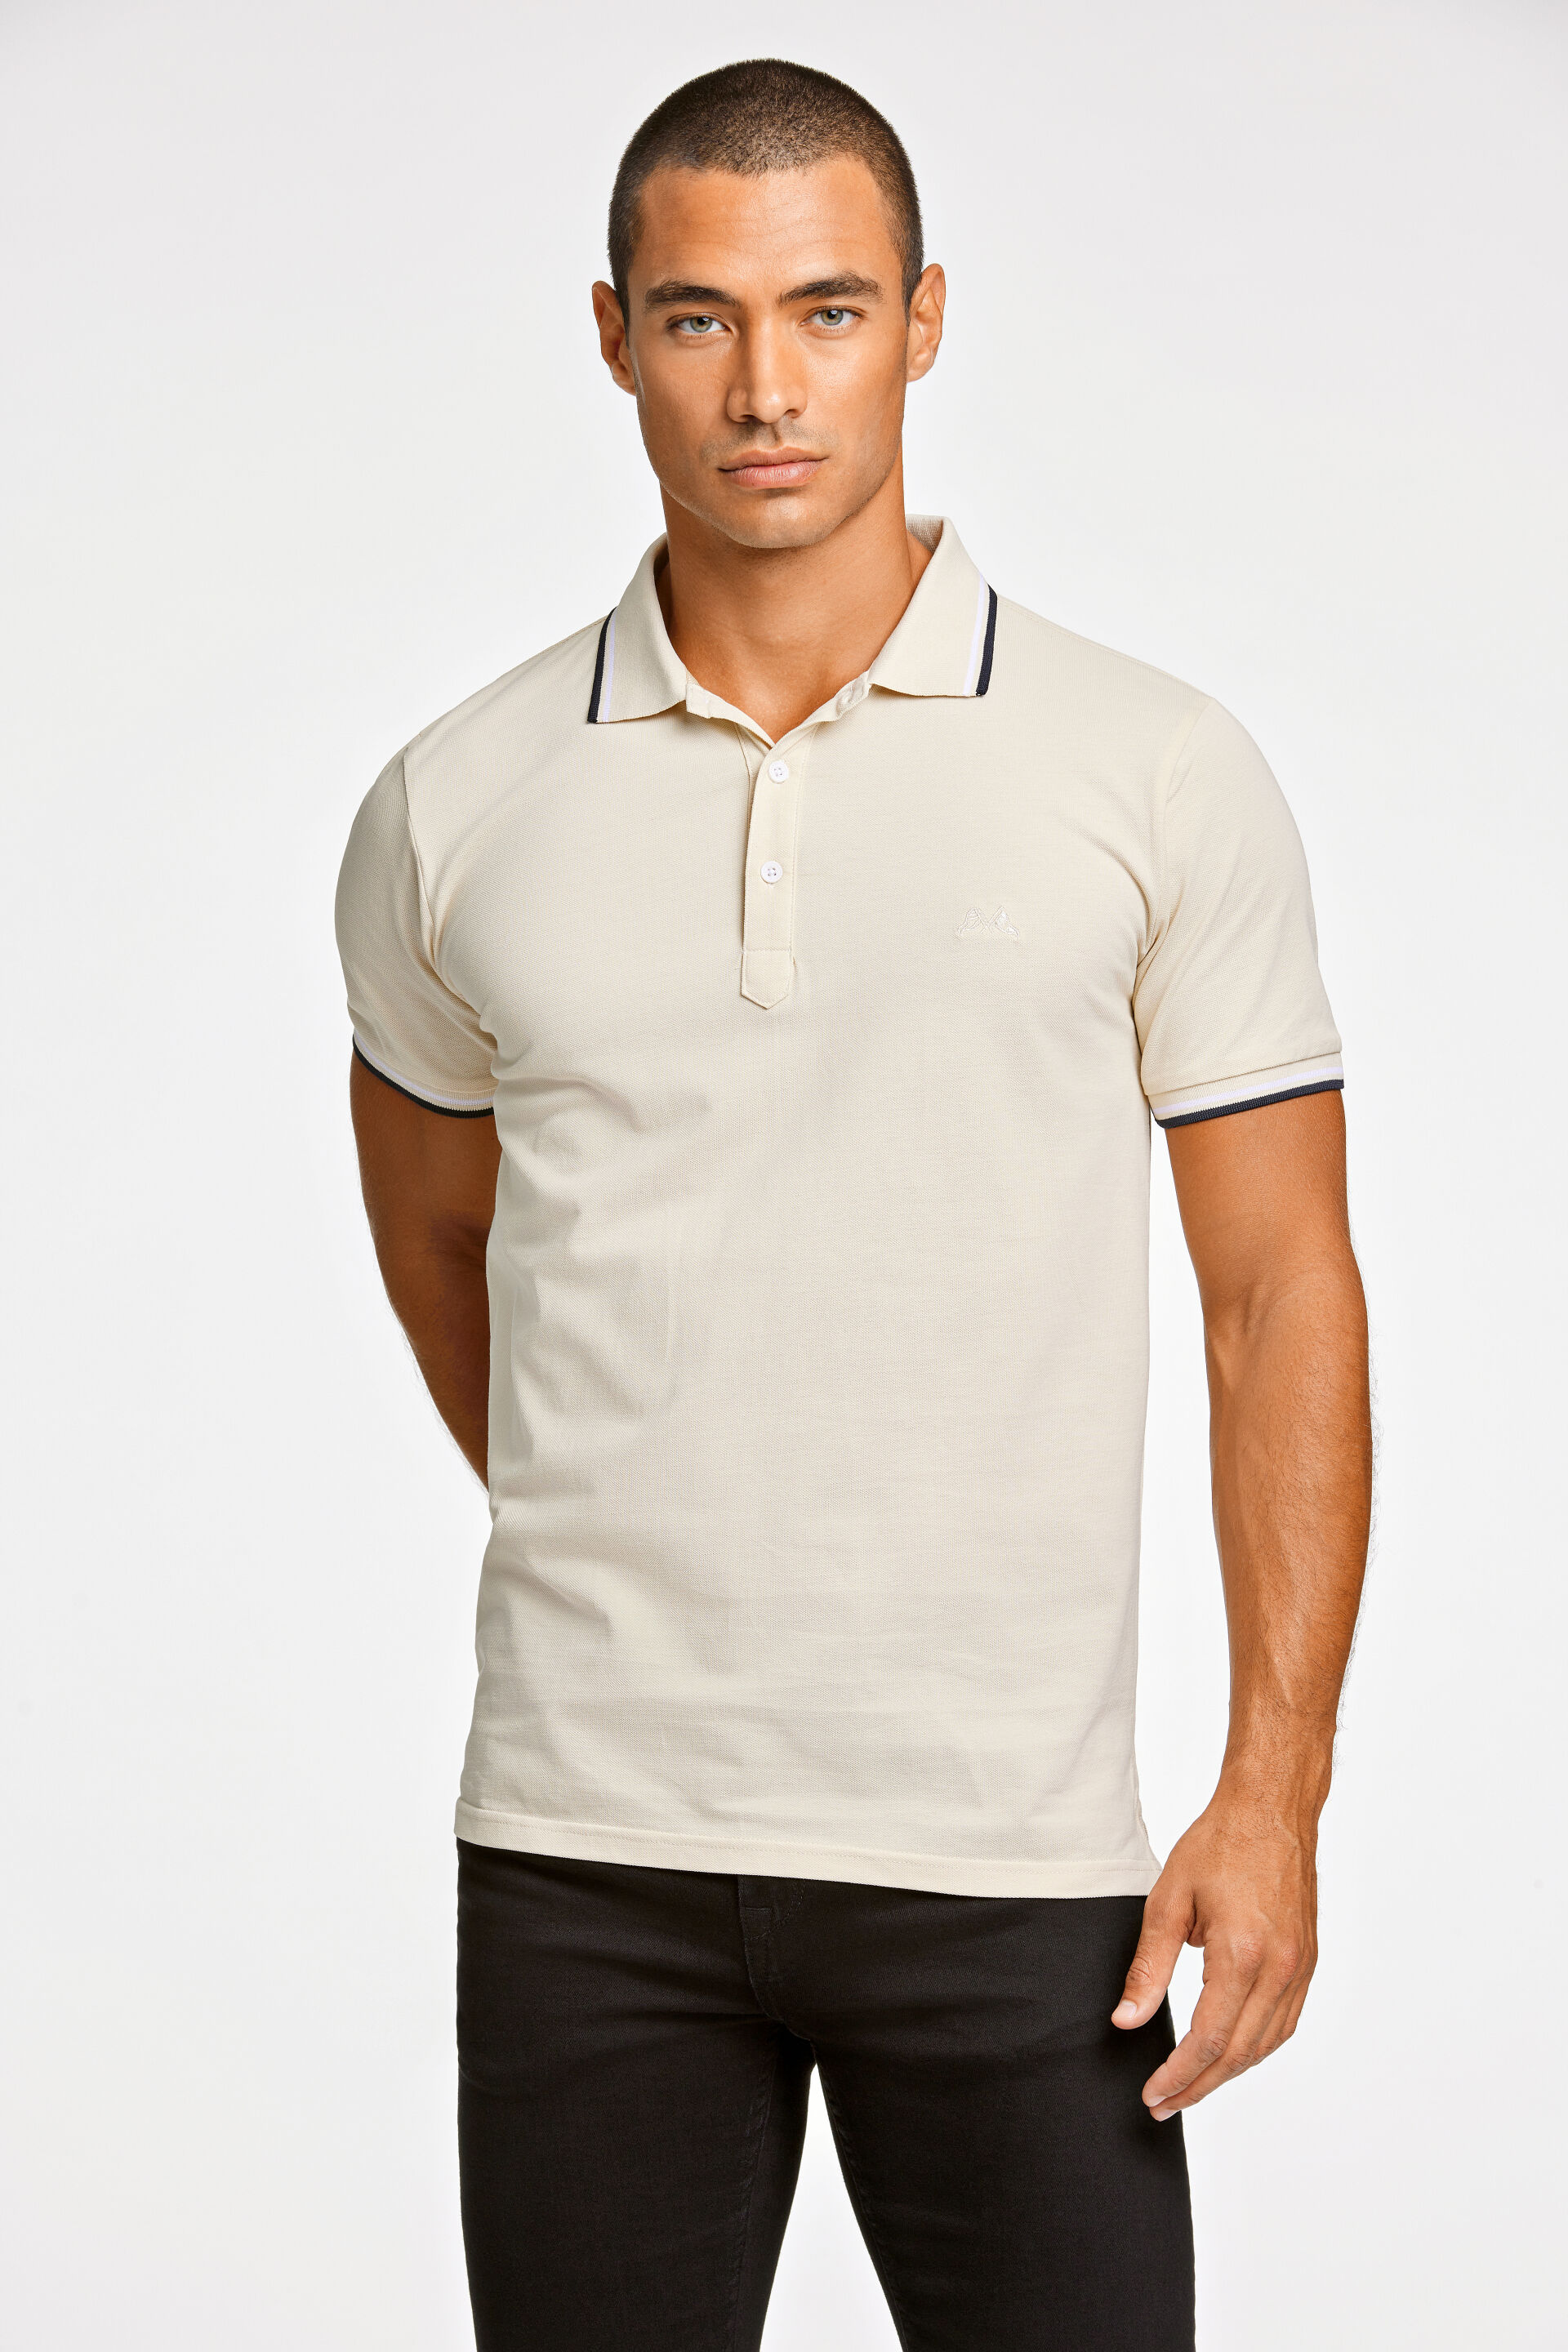 Polo shirt Polo shirt Grey 30-404010